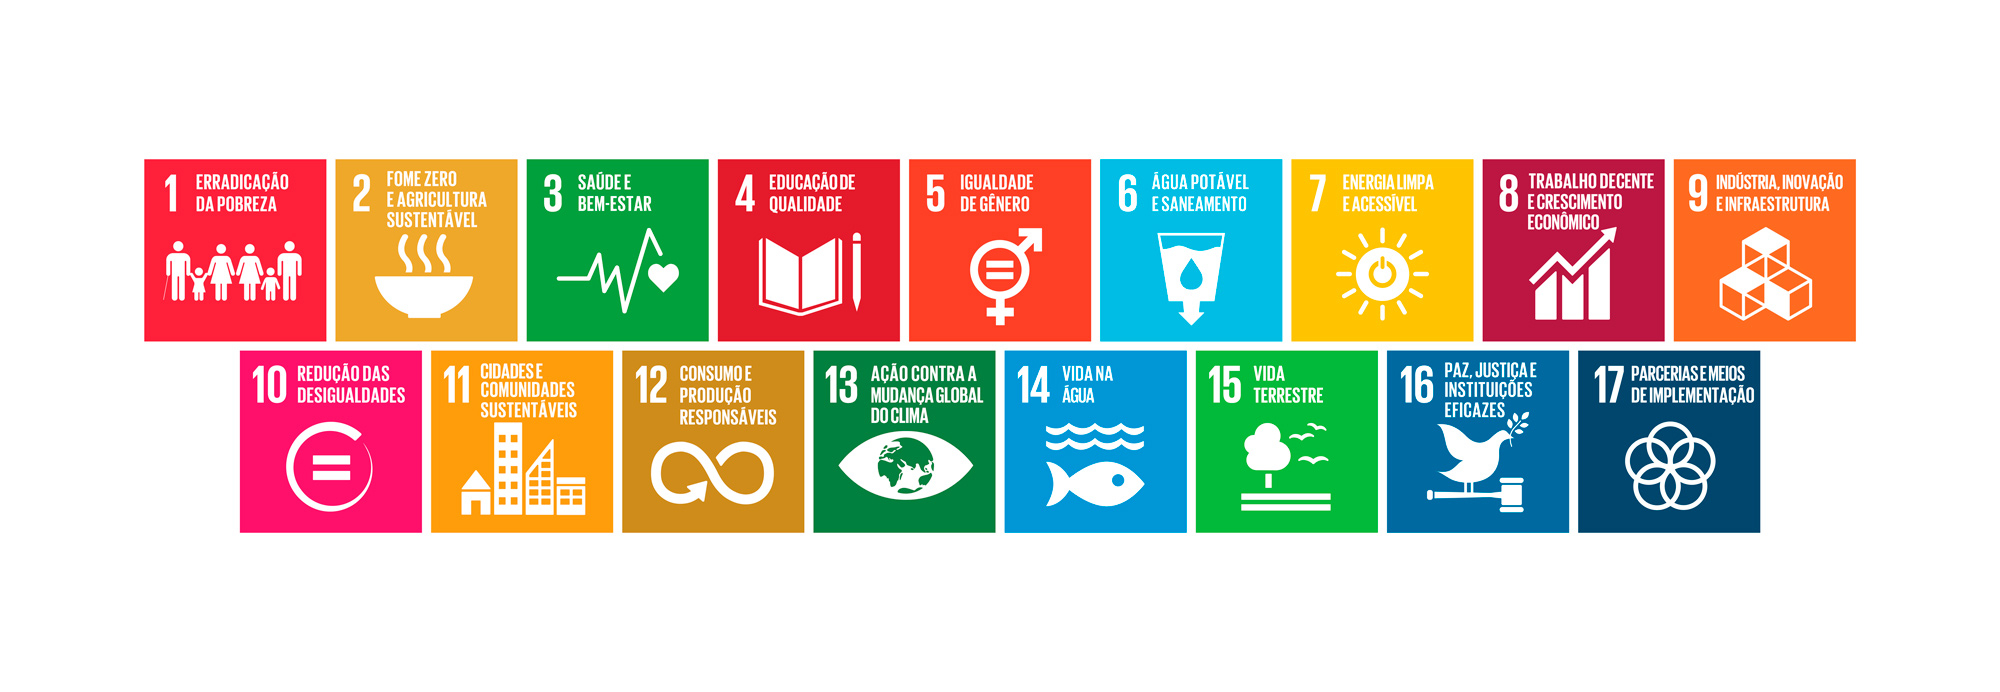 Objetivos do Desenvolvimento Sustentável (ODS) da ONU